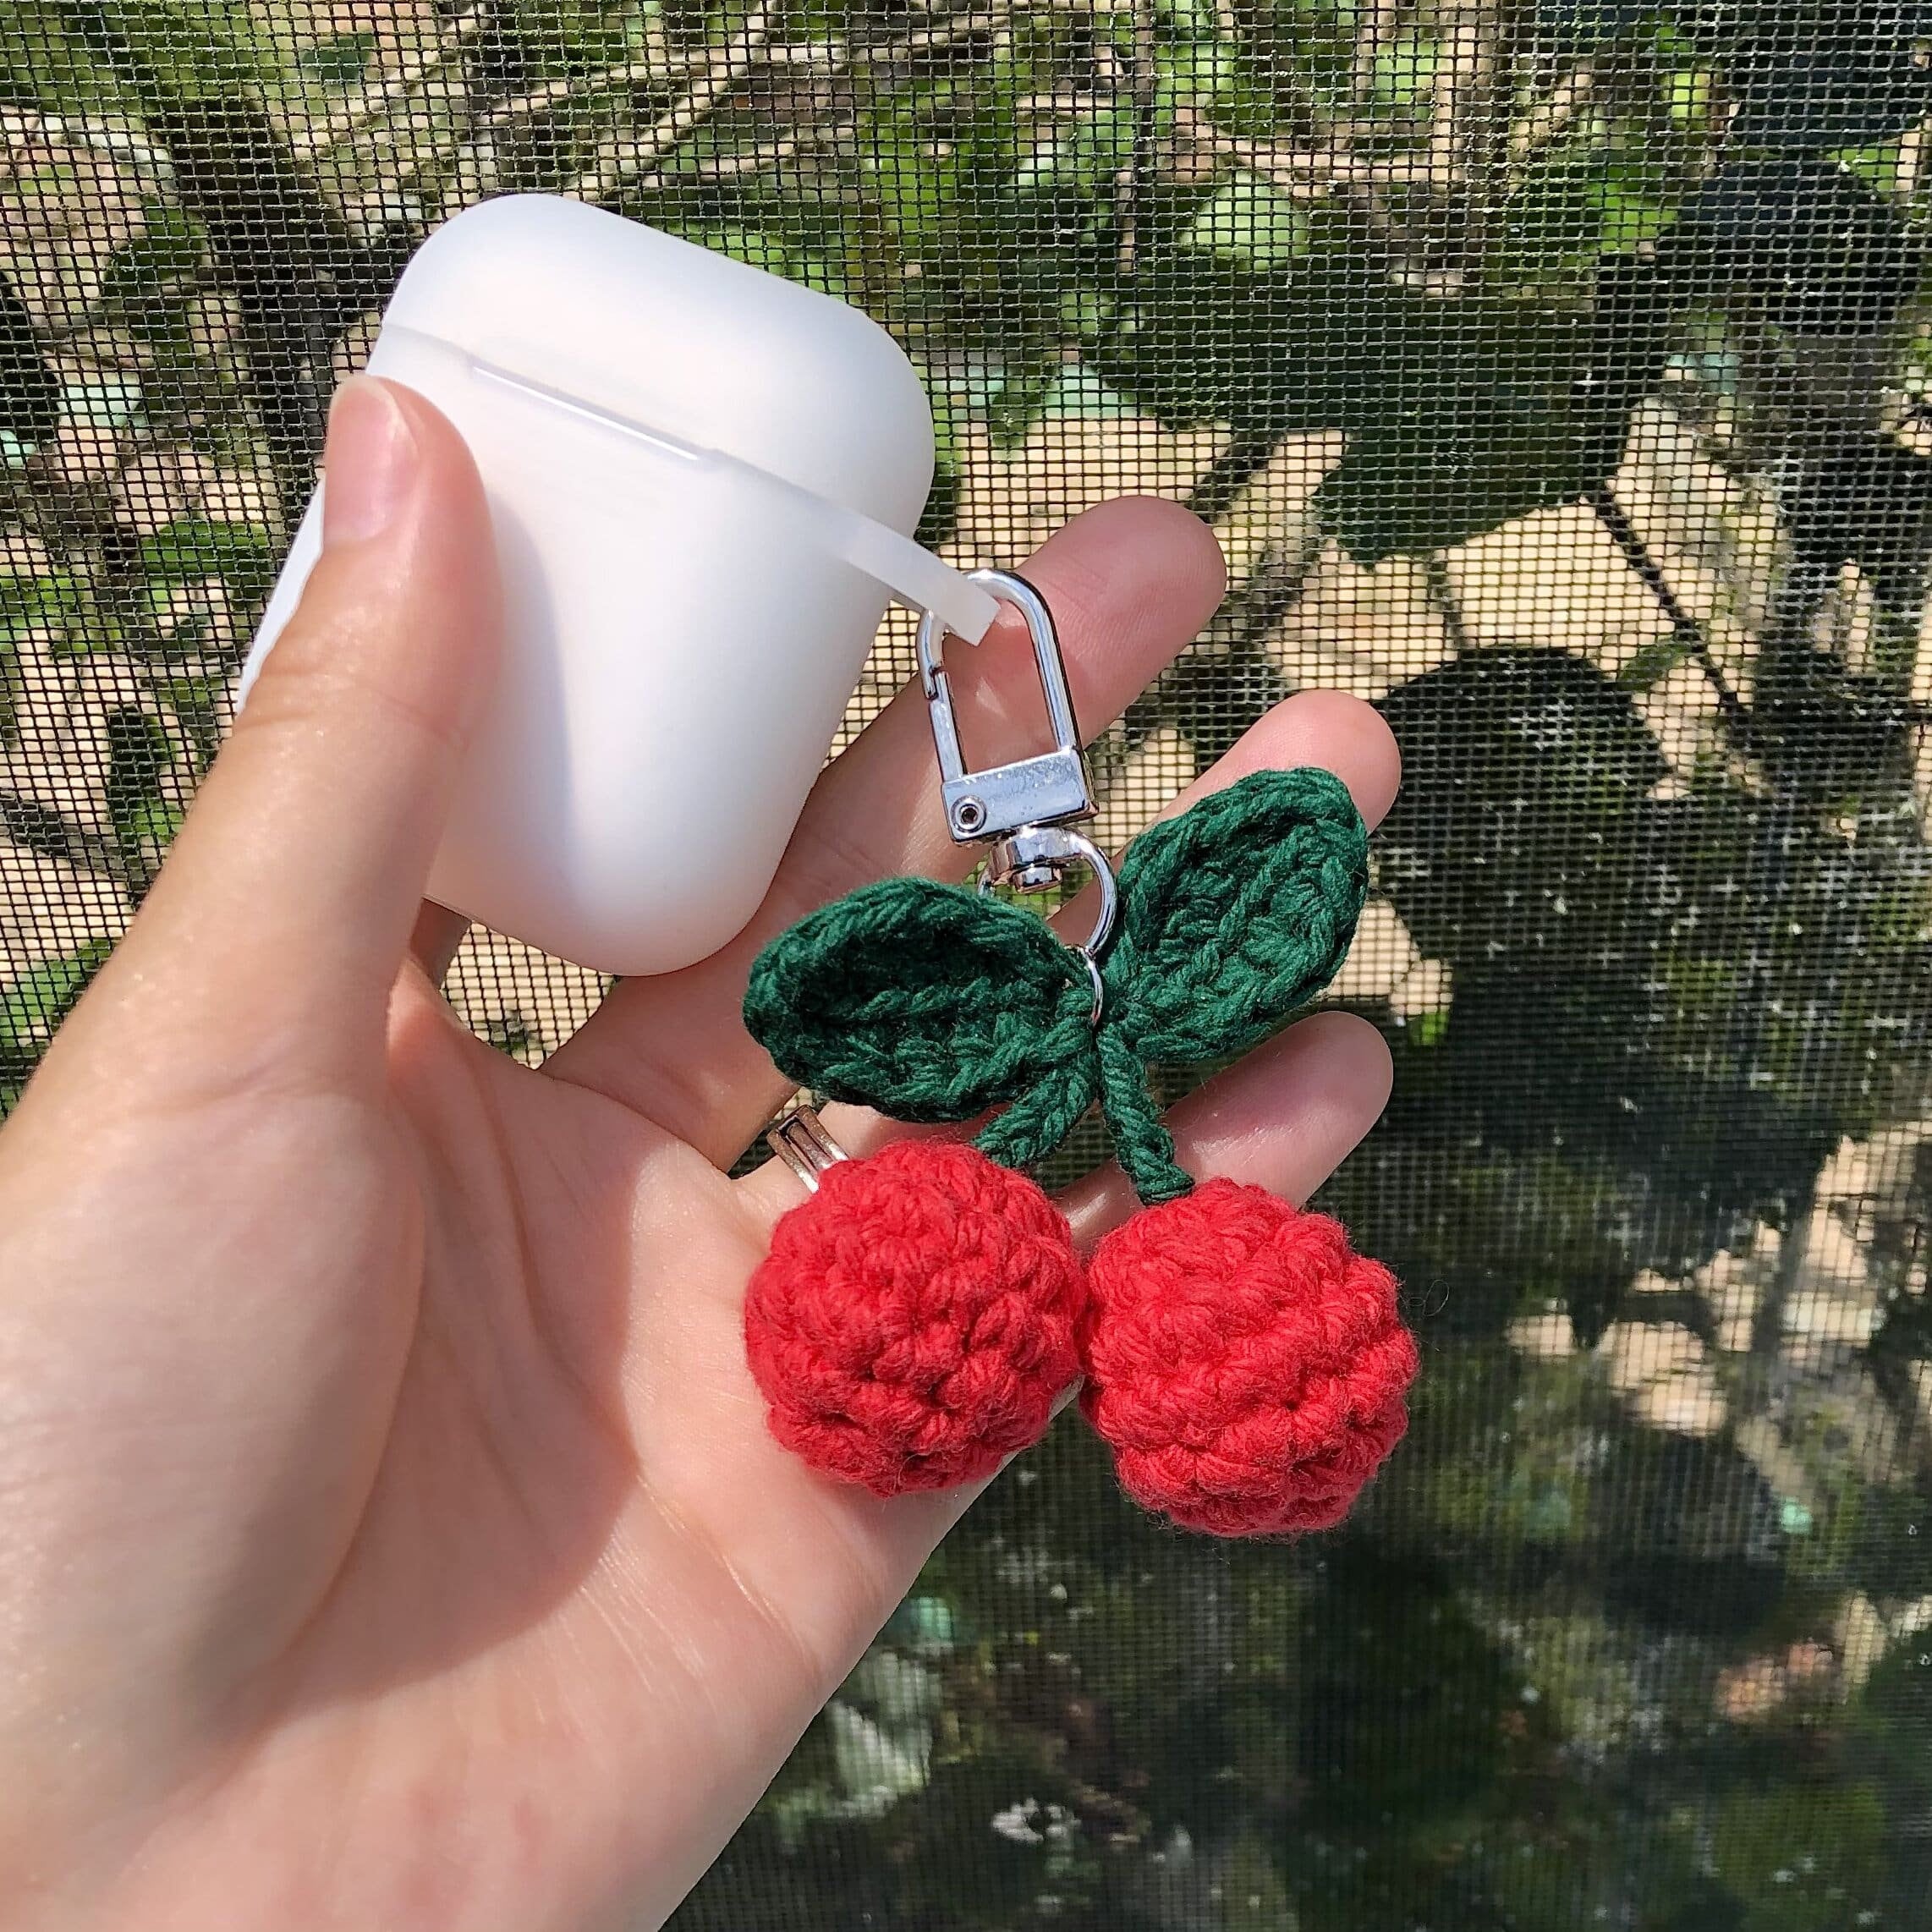 Accessories, Crochet Cherry Keychain